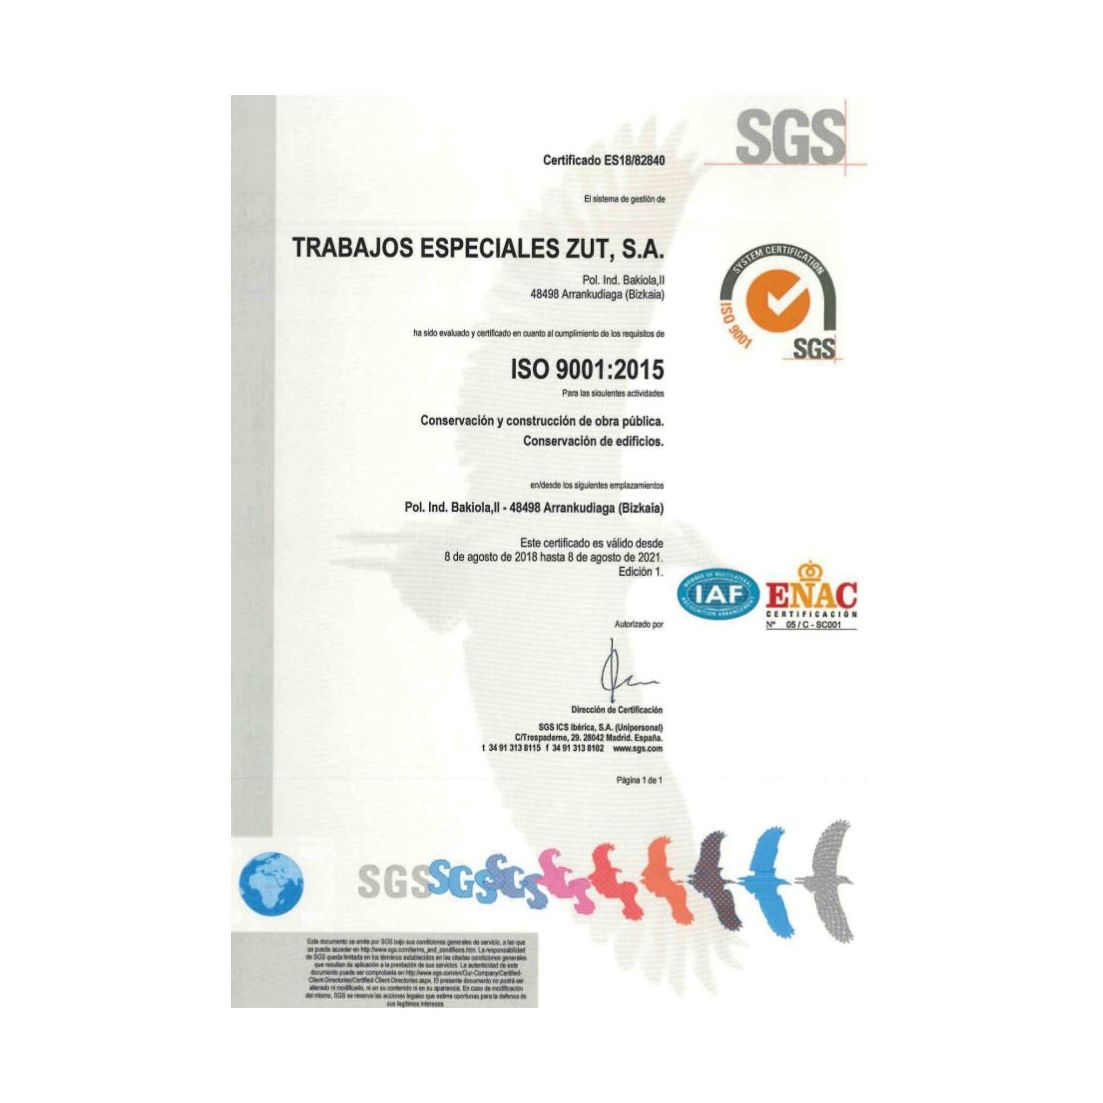 Certificación ISO 9001:2015. Medio ambiente y prevención de riesgos: Servicios de Trabajos Especiales ZUT }}